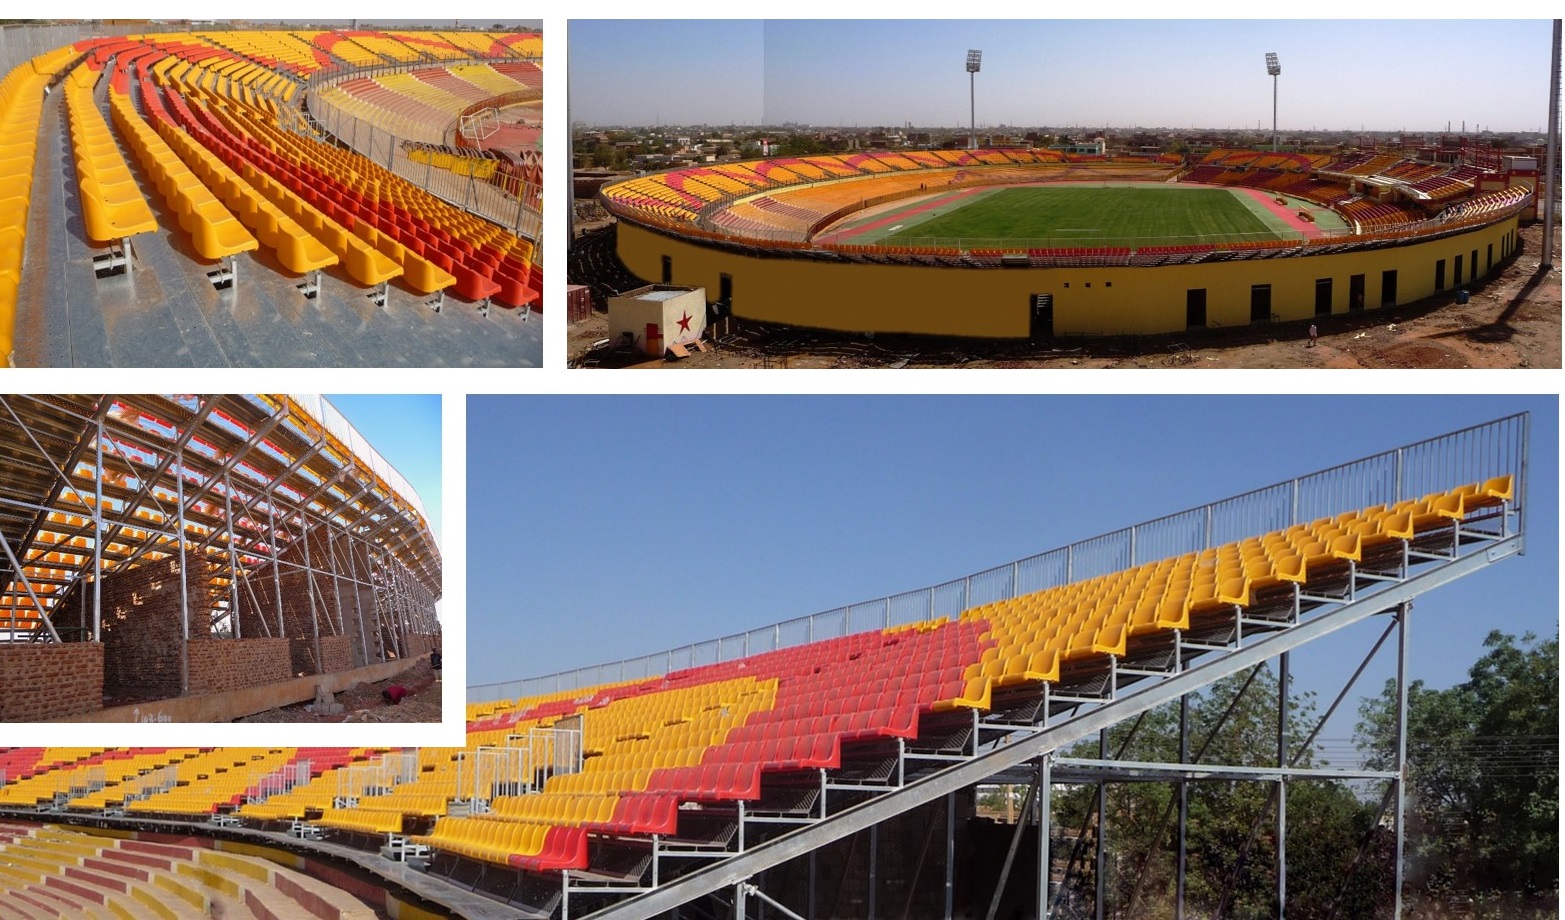 Football Stadium-Merreikh-Khartoum-Sudan-2009